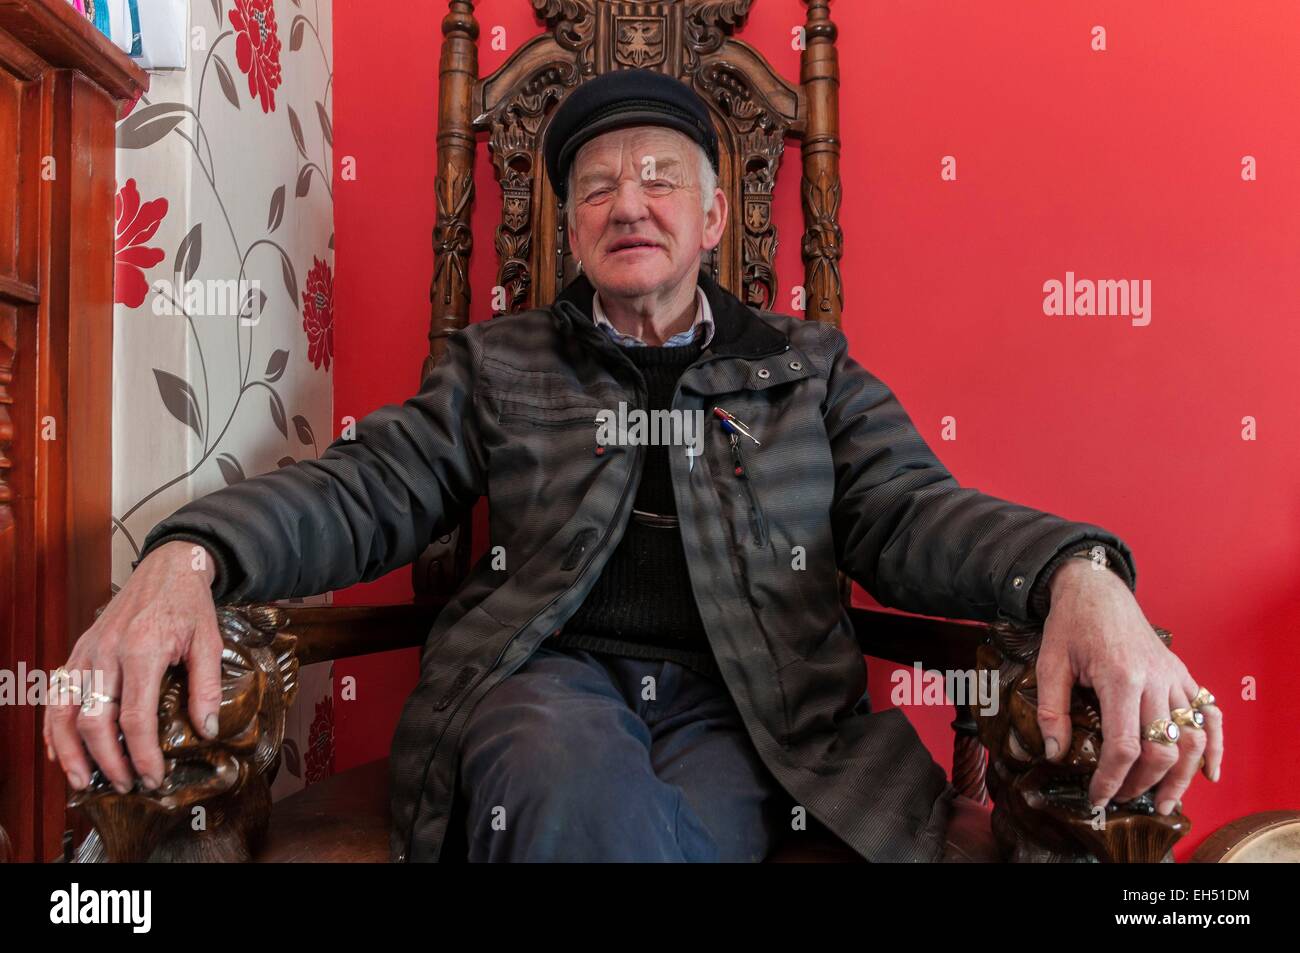 Irlanda, Ulster, Contea di Donegal, isola di Tory, Patsy Dan Rodgers il re di Tory nella sua casa sul suo trono offerta dal Qatar Foto Stock